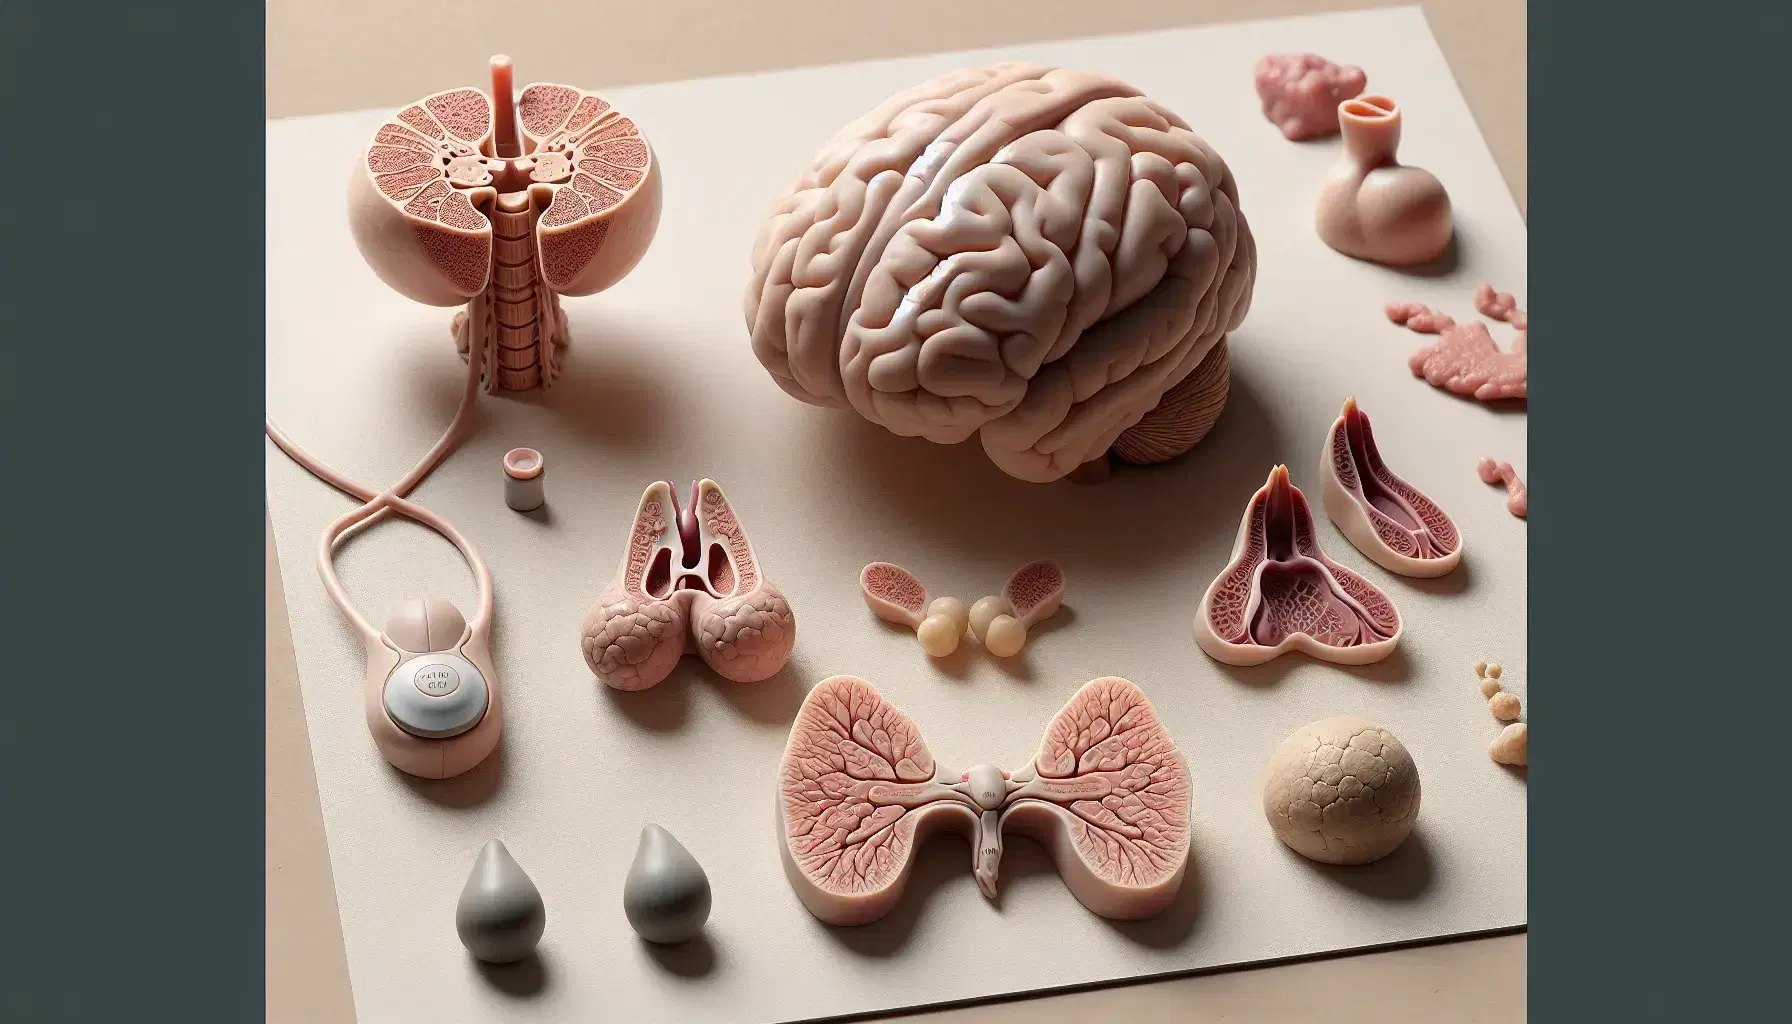 Modelos anatómicos tridimensionales de glándulas endocrinas humanas, incluyendo cerebro con hipotálamo, tiroides con paratiroides, páncreas, suprarrenales sobre riñones y órganos reproductores.